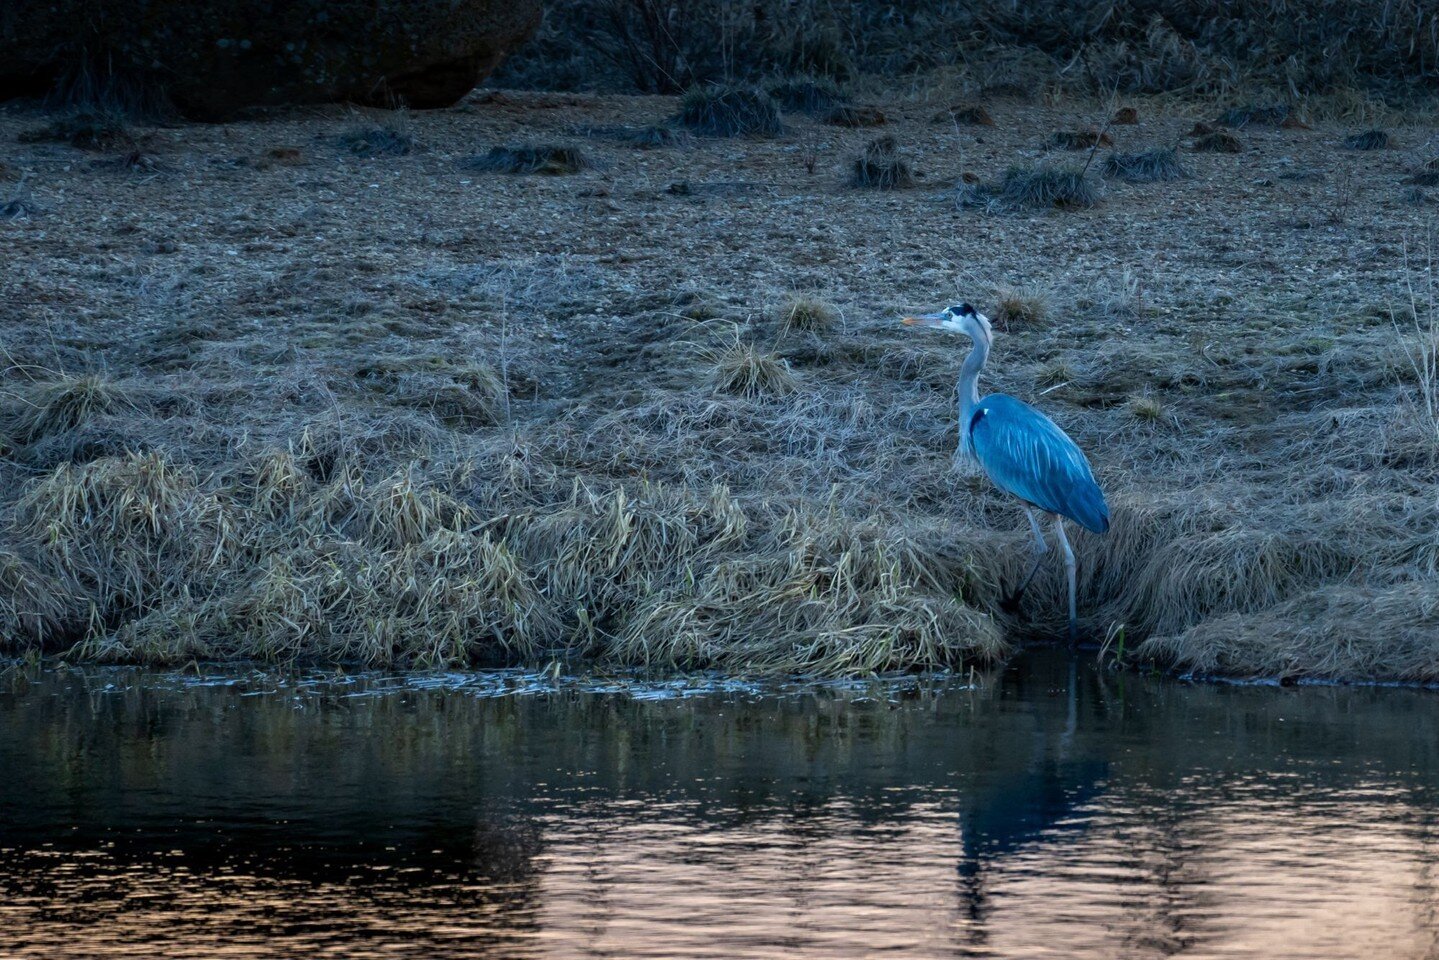 Evening hike with Denver - found a Heron!

#Taos #NewMexico

Camera: #SonyA7CR